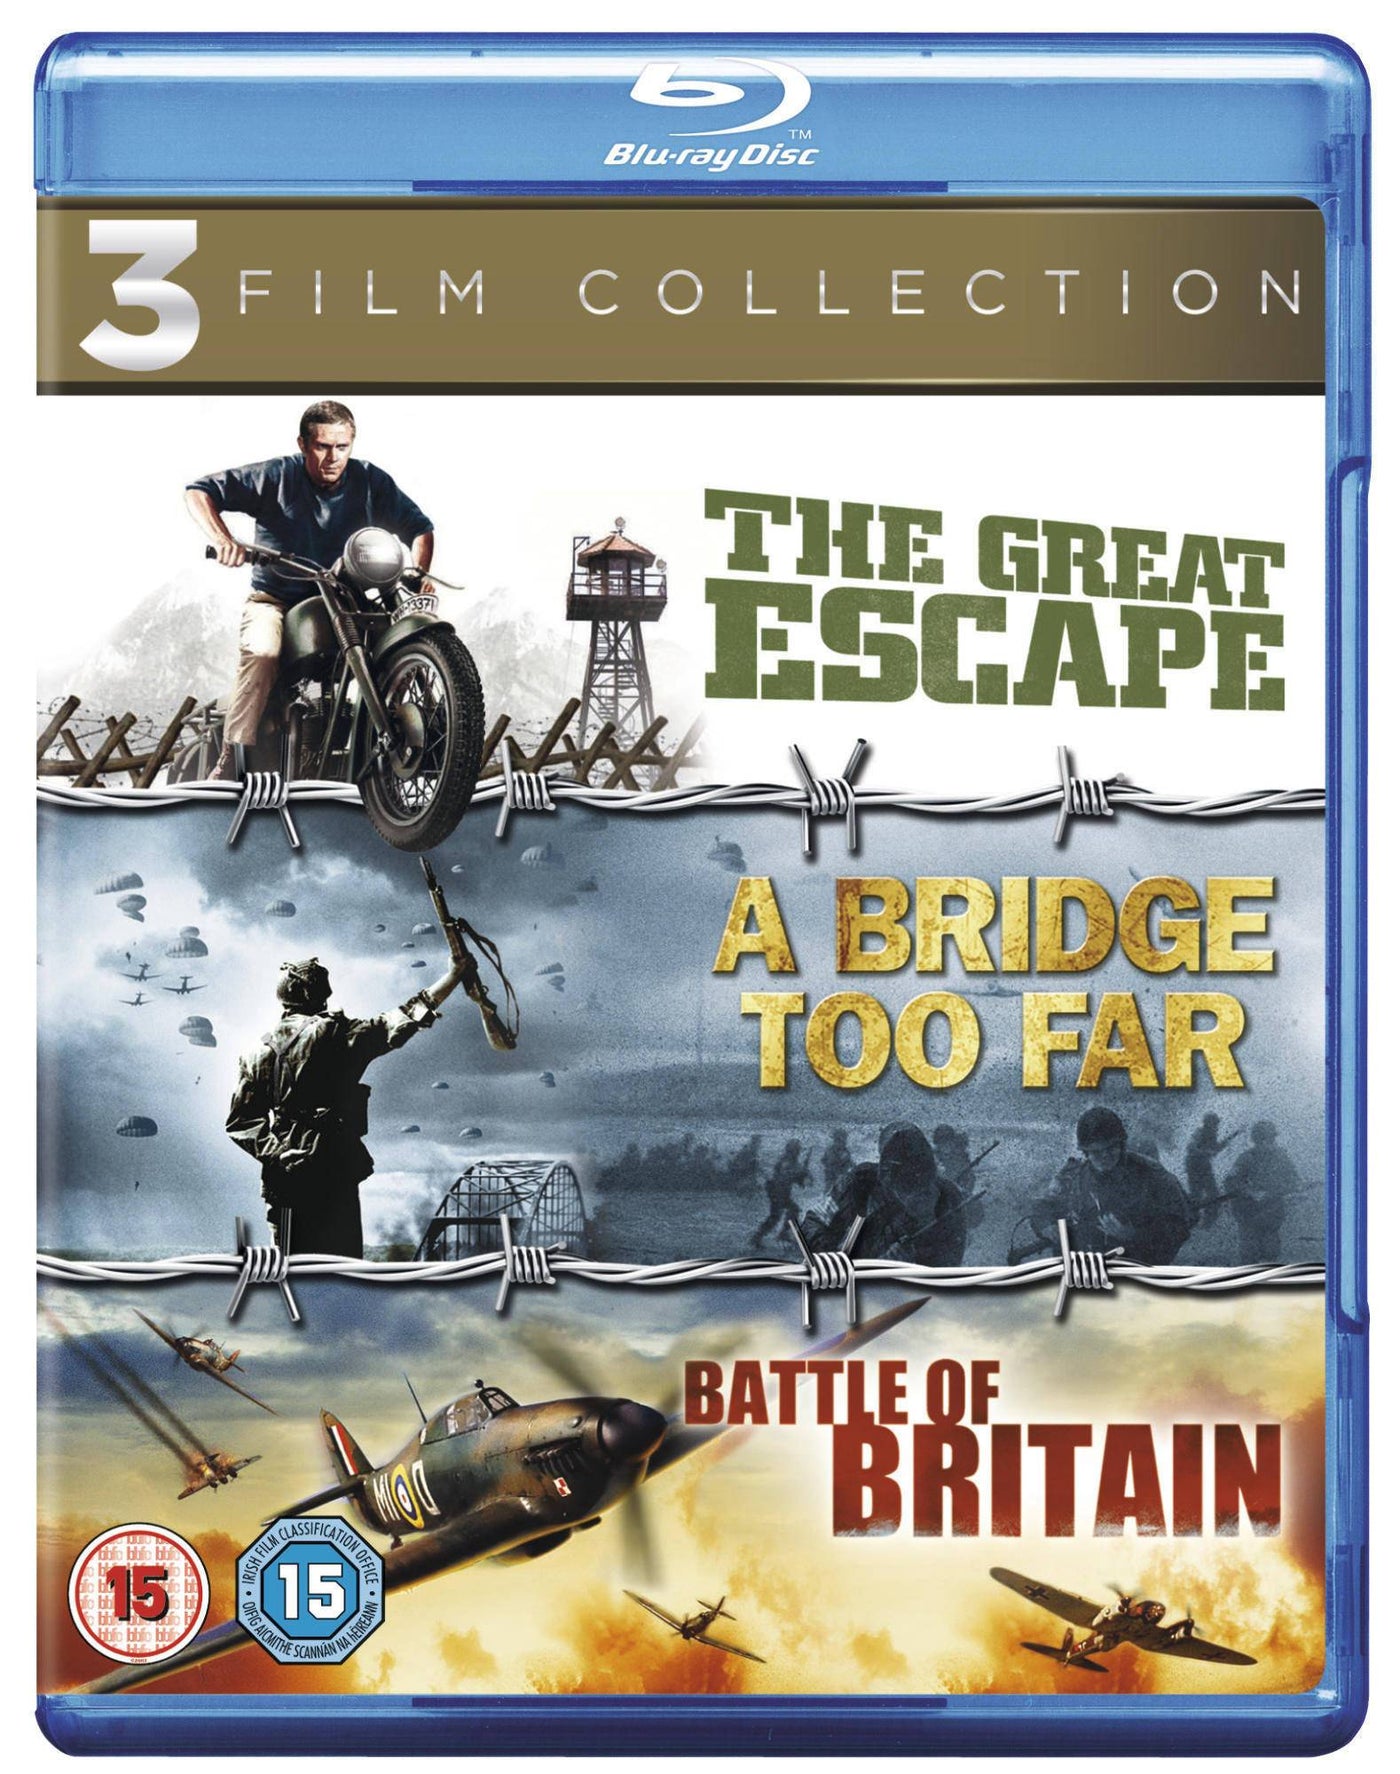 The Great Escape / A Bridge Too Far / Battle of Britain [1963] (Blu-ray)